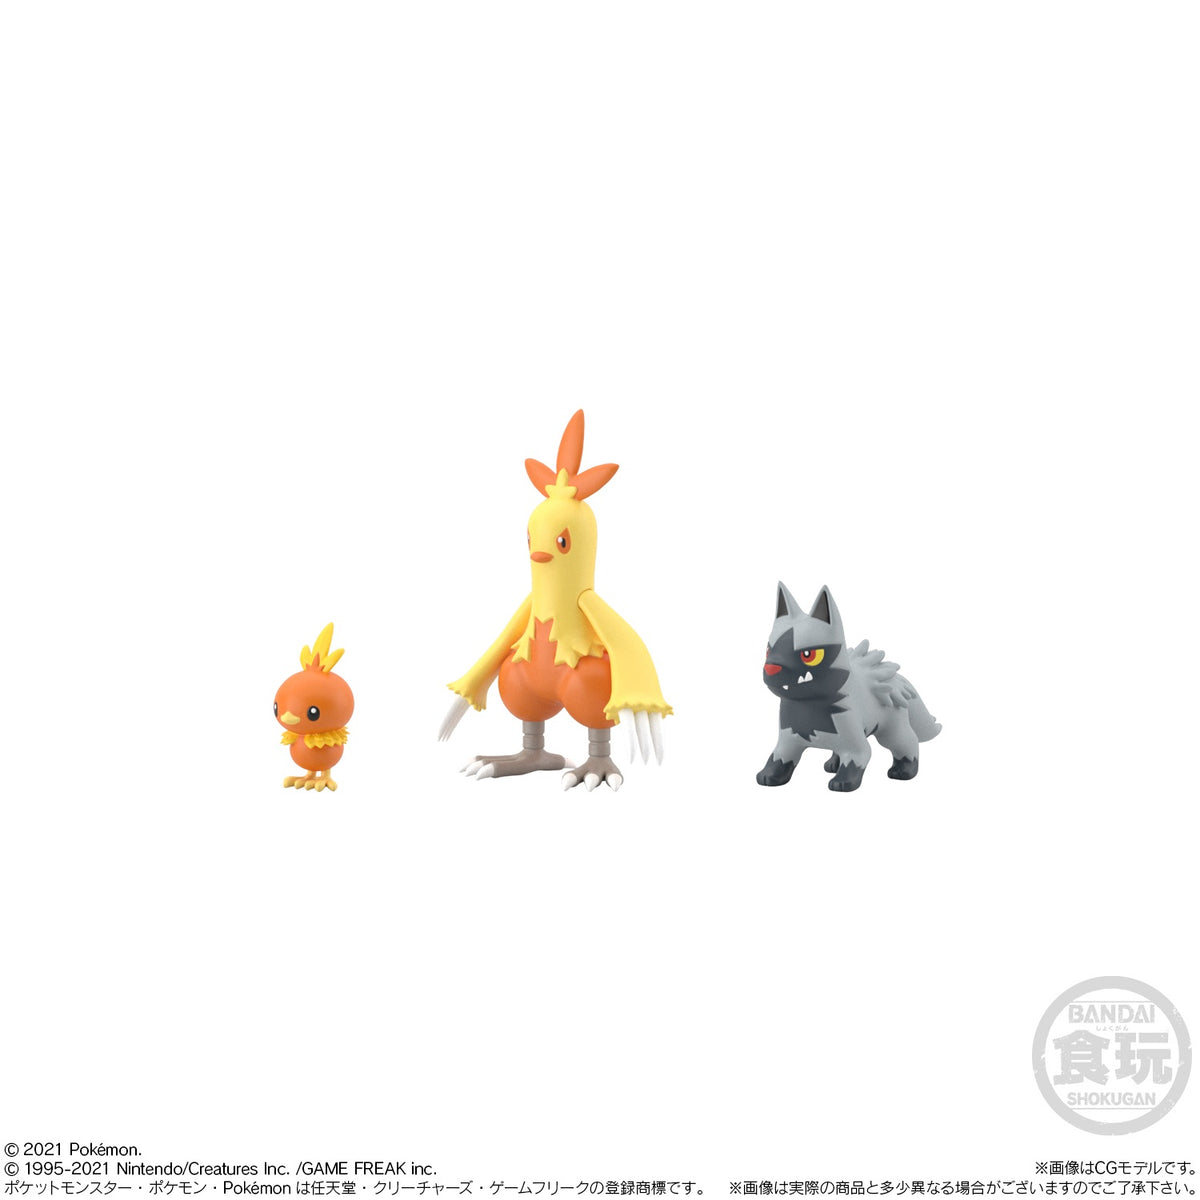 Pokemon Scale World - Hoenn region set